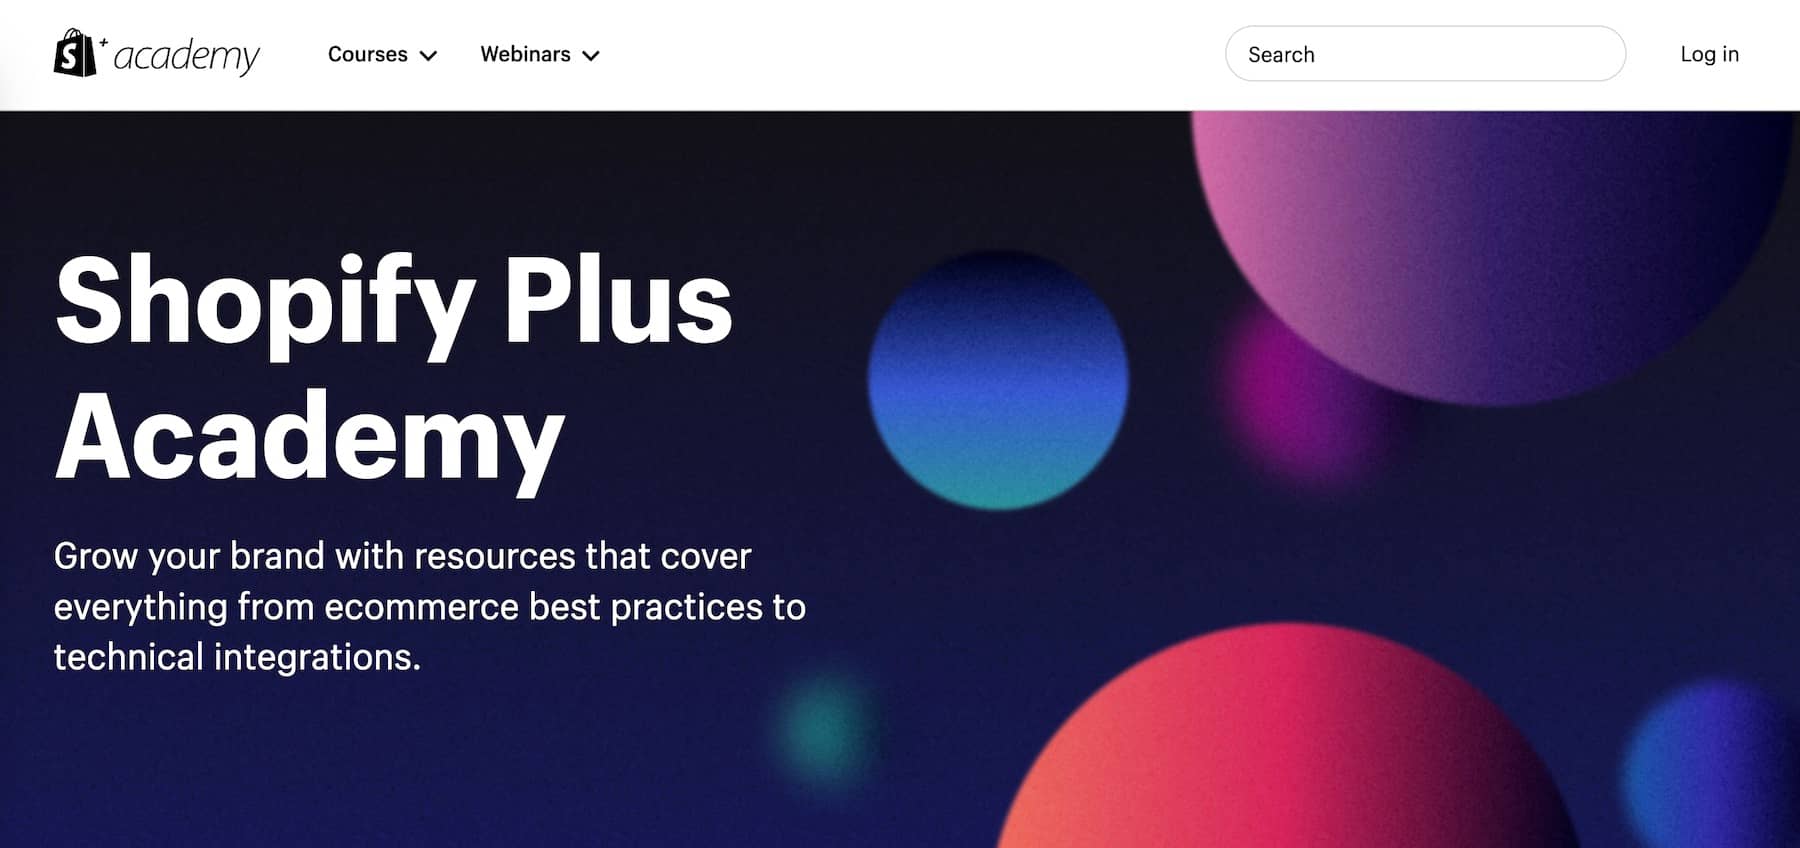 Shopify Plus mencakup akses ke Akademi Shopify Plus, serangkaian sumber daya untuk praktik terbaik dan integrasi.